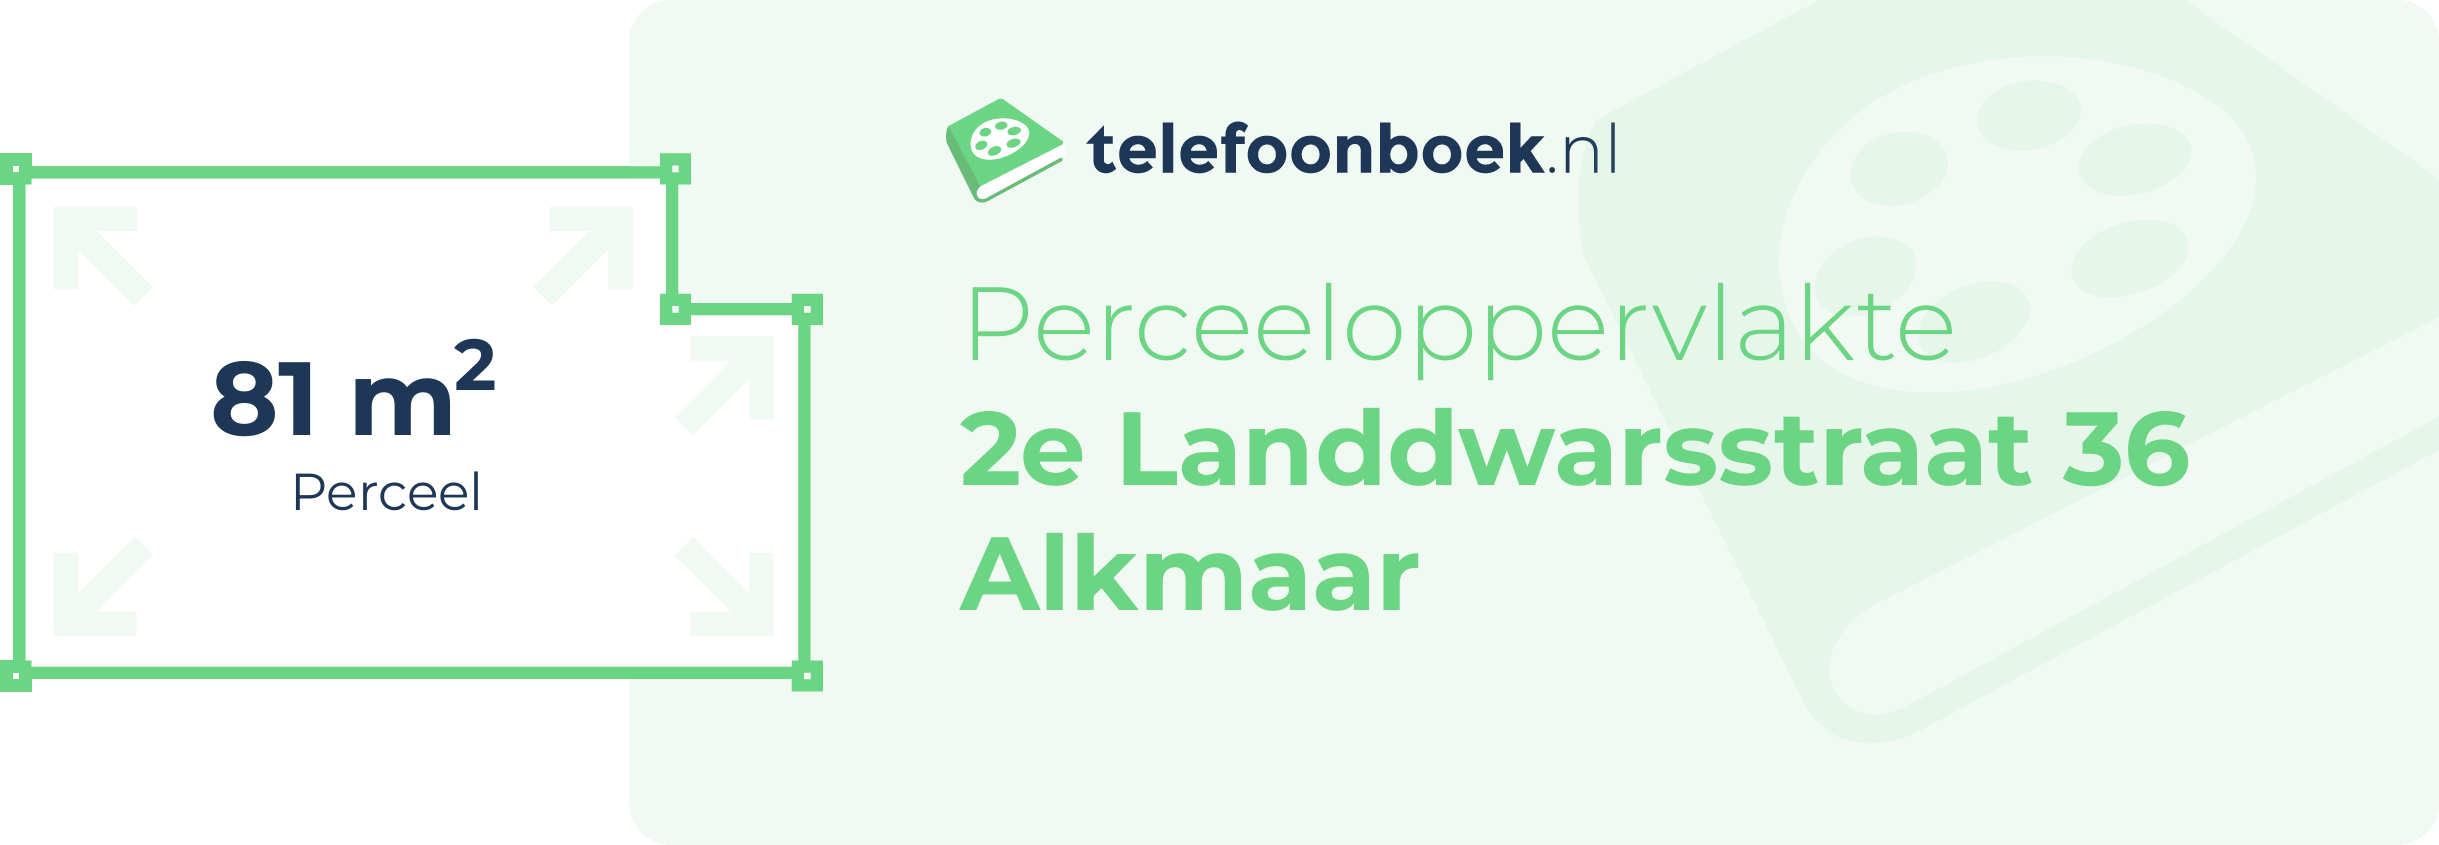 Perceeloppervlakte 2e Landdwarsstraat 36 Alkmaar